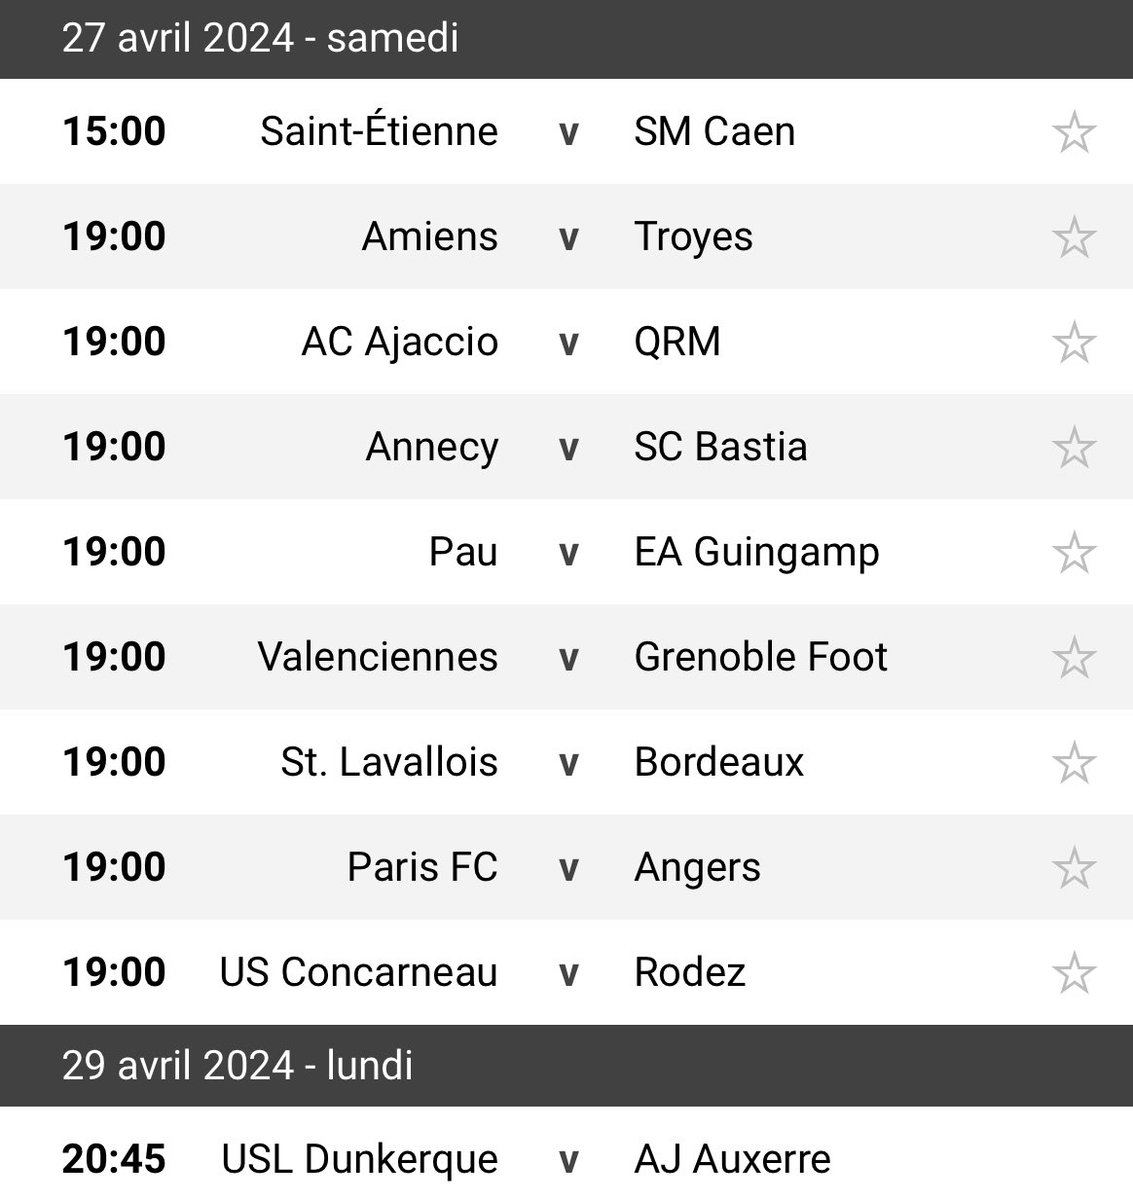 Saint-Etienne/SM Caen
Paris FC/Angers
Dunkerque/AJ Auxerre

La prochaine journée va être importante (comme les prochaines évidemment). On a des adversaires plus prenables que nos adversaires directs. On a donc l’occasion de prendre (peut-être) des pts sur eux. Faut pas se louper